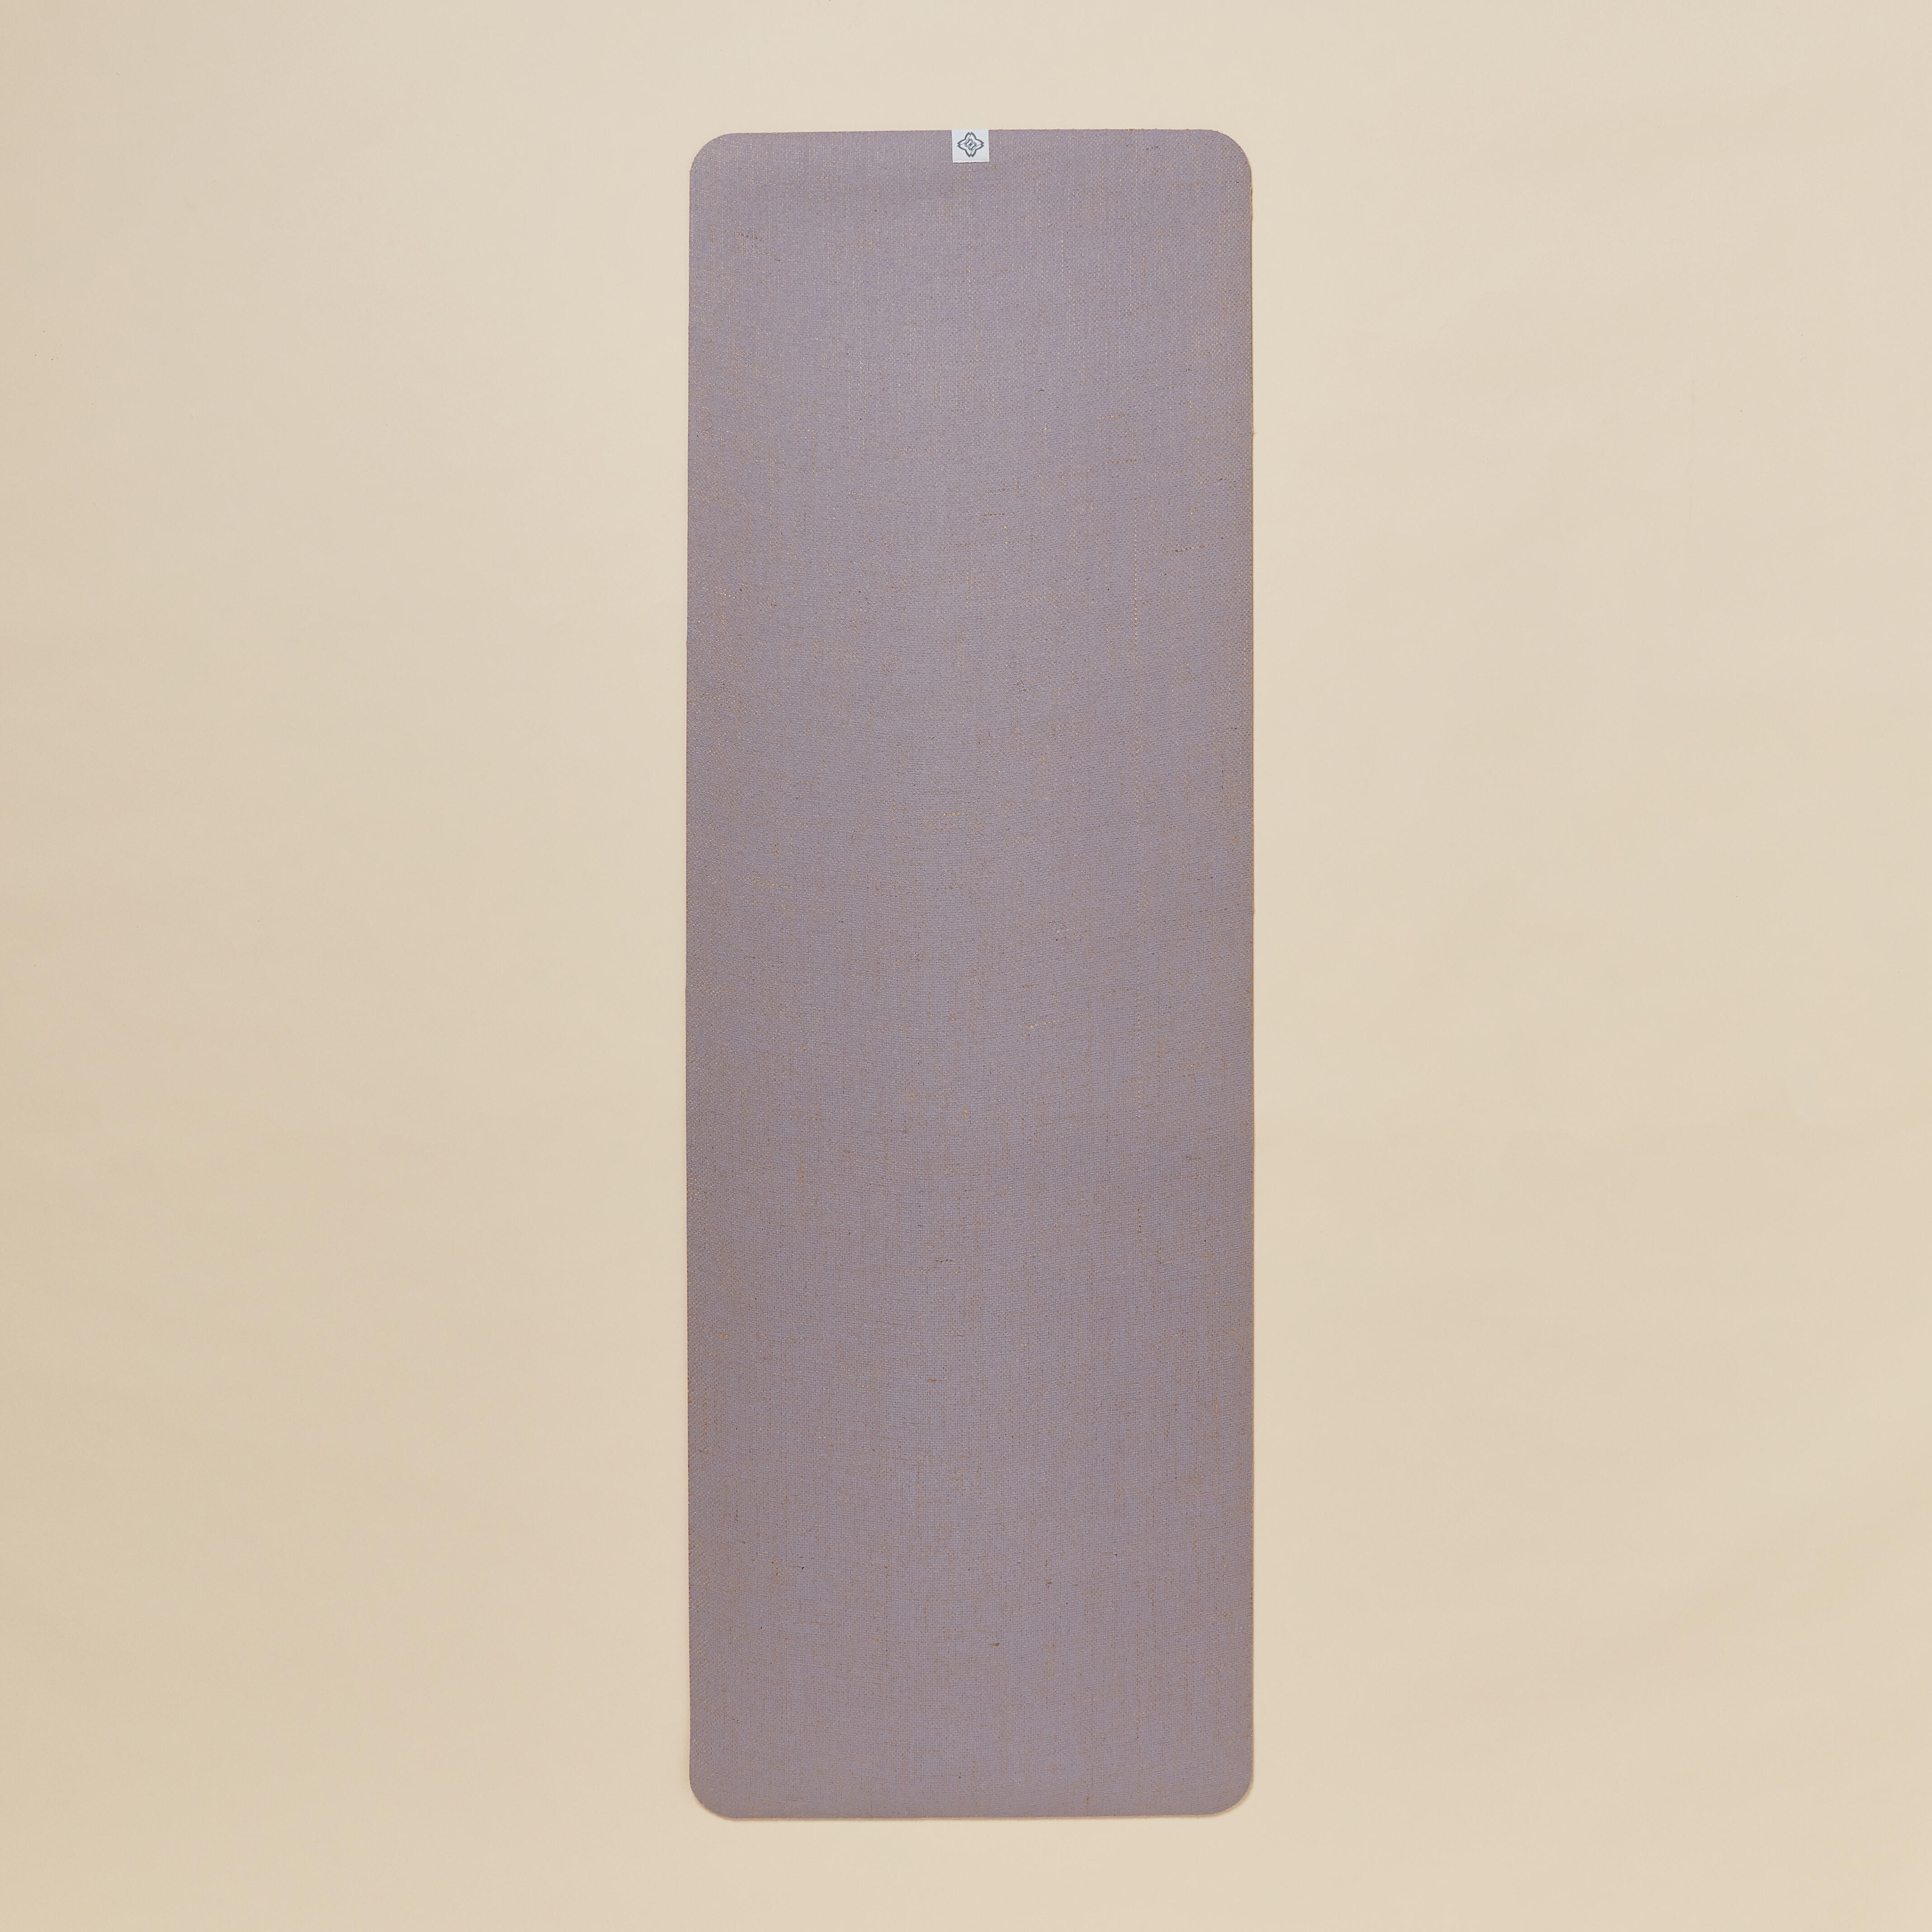 Saltea Yoga Cauciuc/ iută 183 cm x 61 cm x 4 mm Mov 183